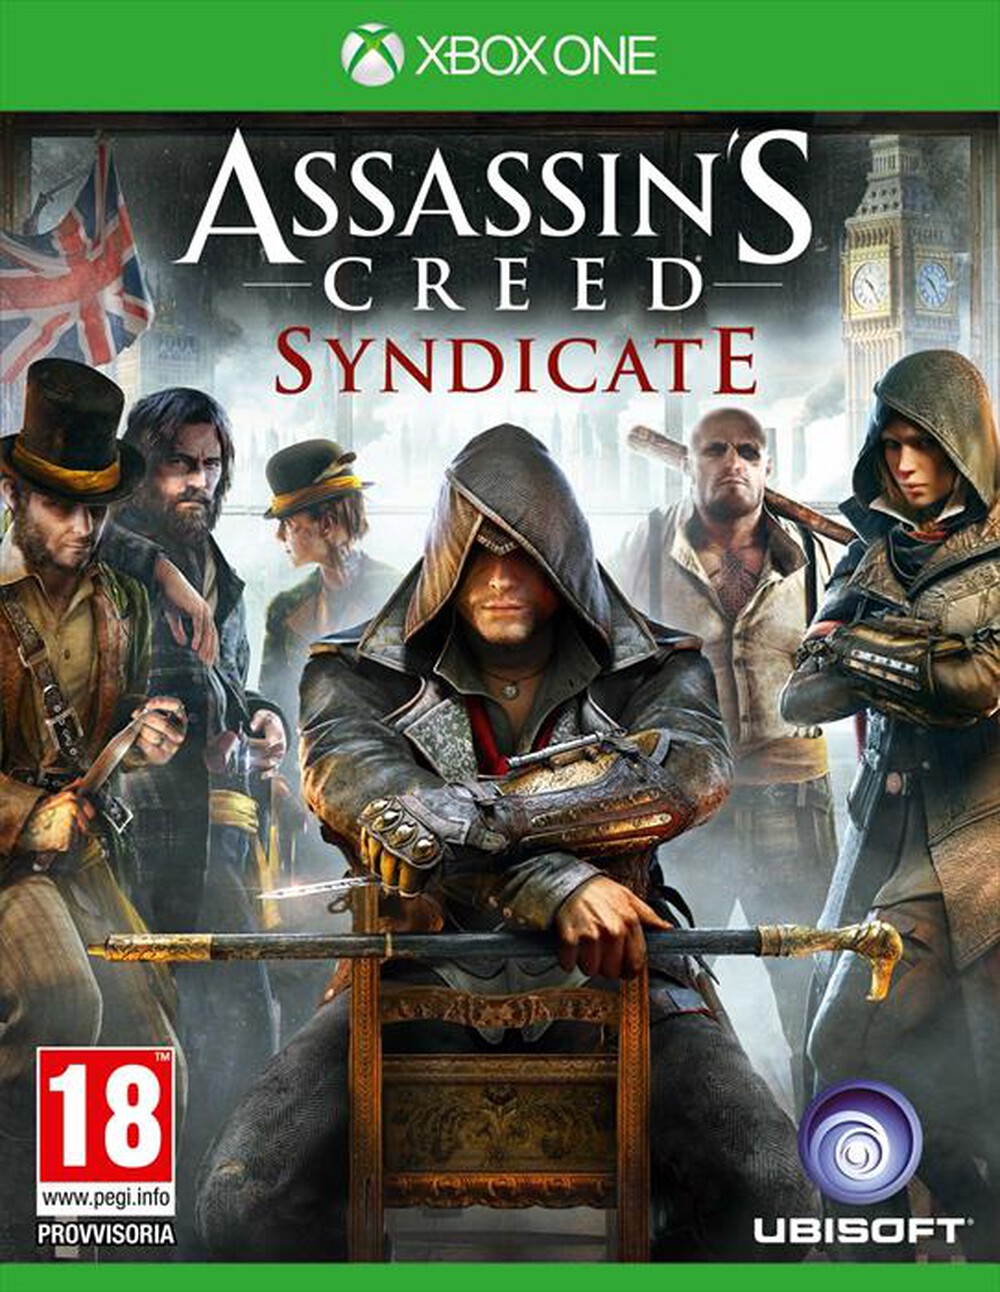 "UBISOFT - Assassin’s Creed Syndicate XboxOne"